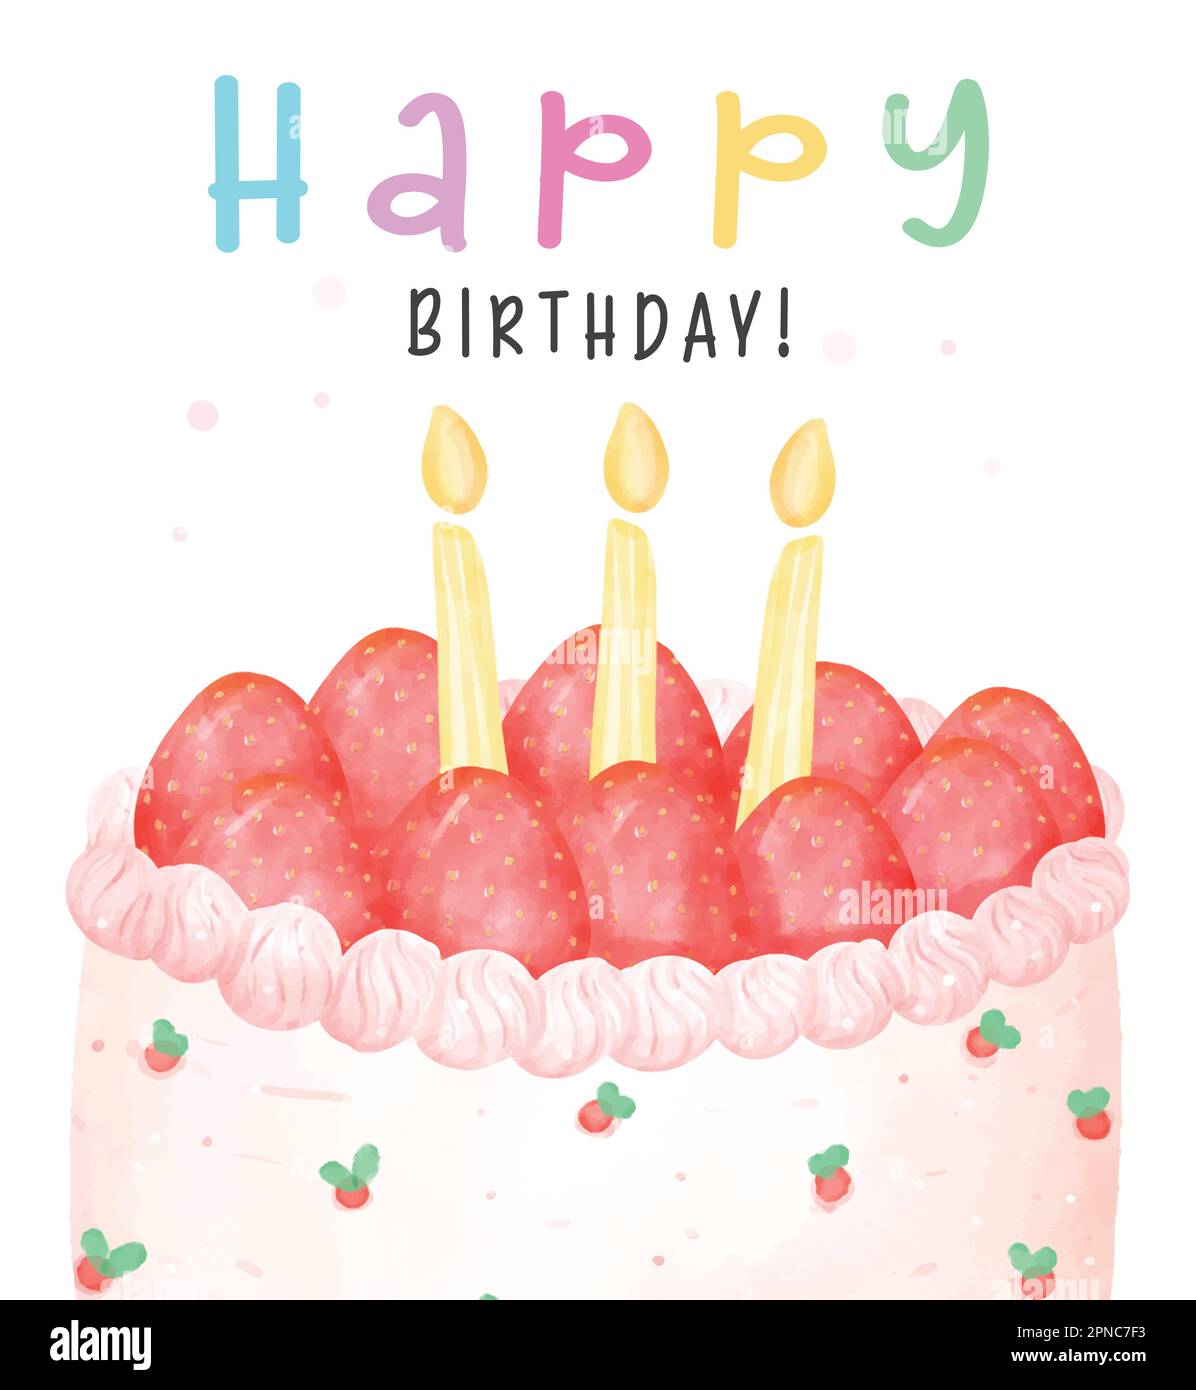 Süße Erdbeeren Geburtstagstorte mit Kerzen oben, Happy birthday Watercolor Handmalerei Illustration isoliert auf weißem Hintergrund zur Begrüßung ca. Stock Vektor